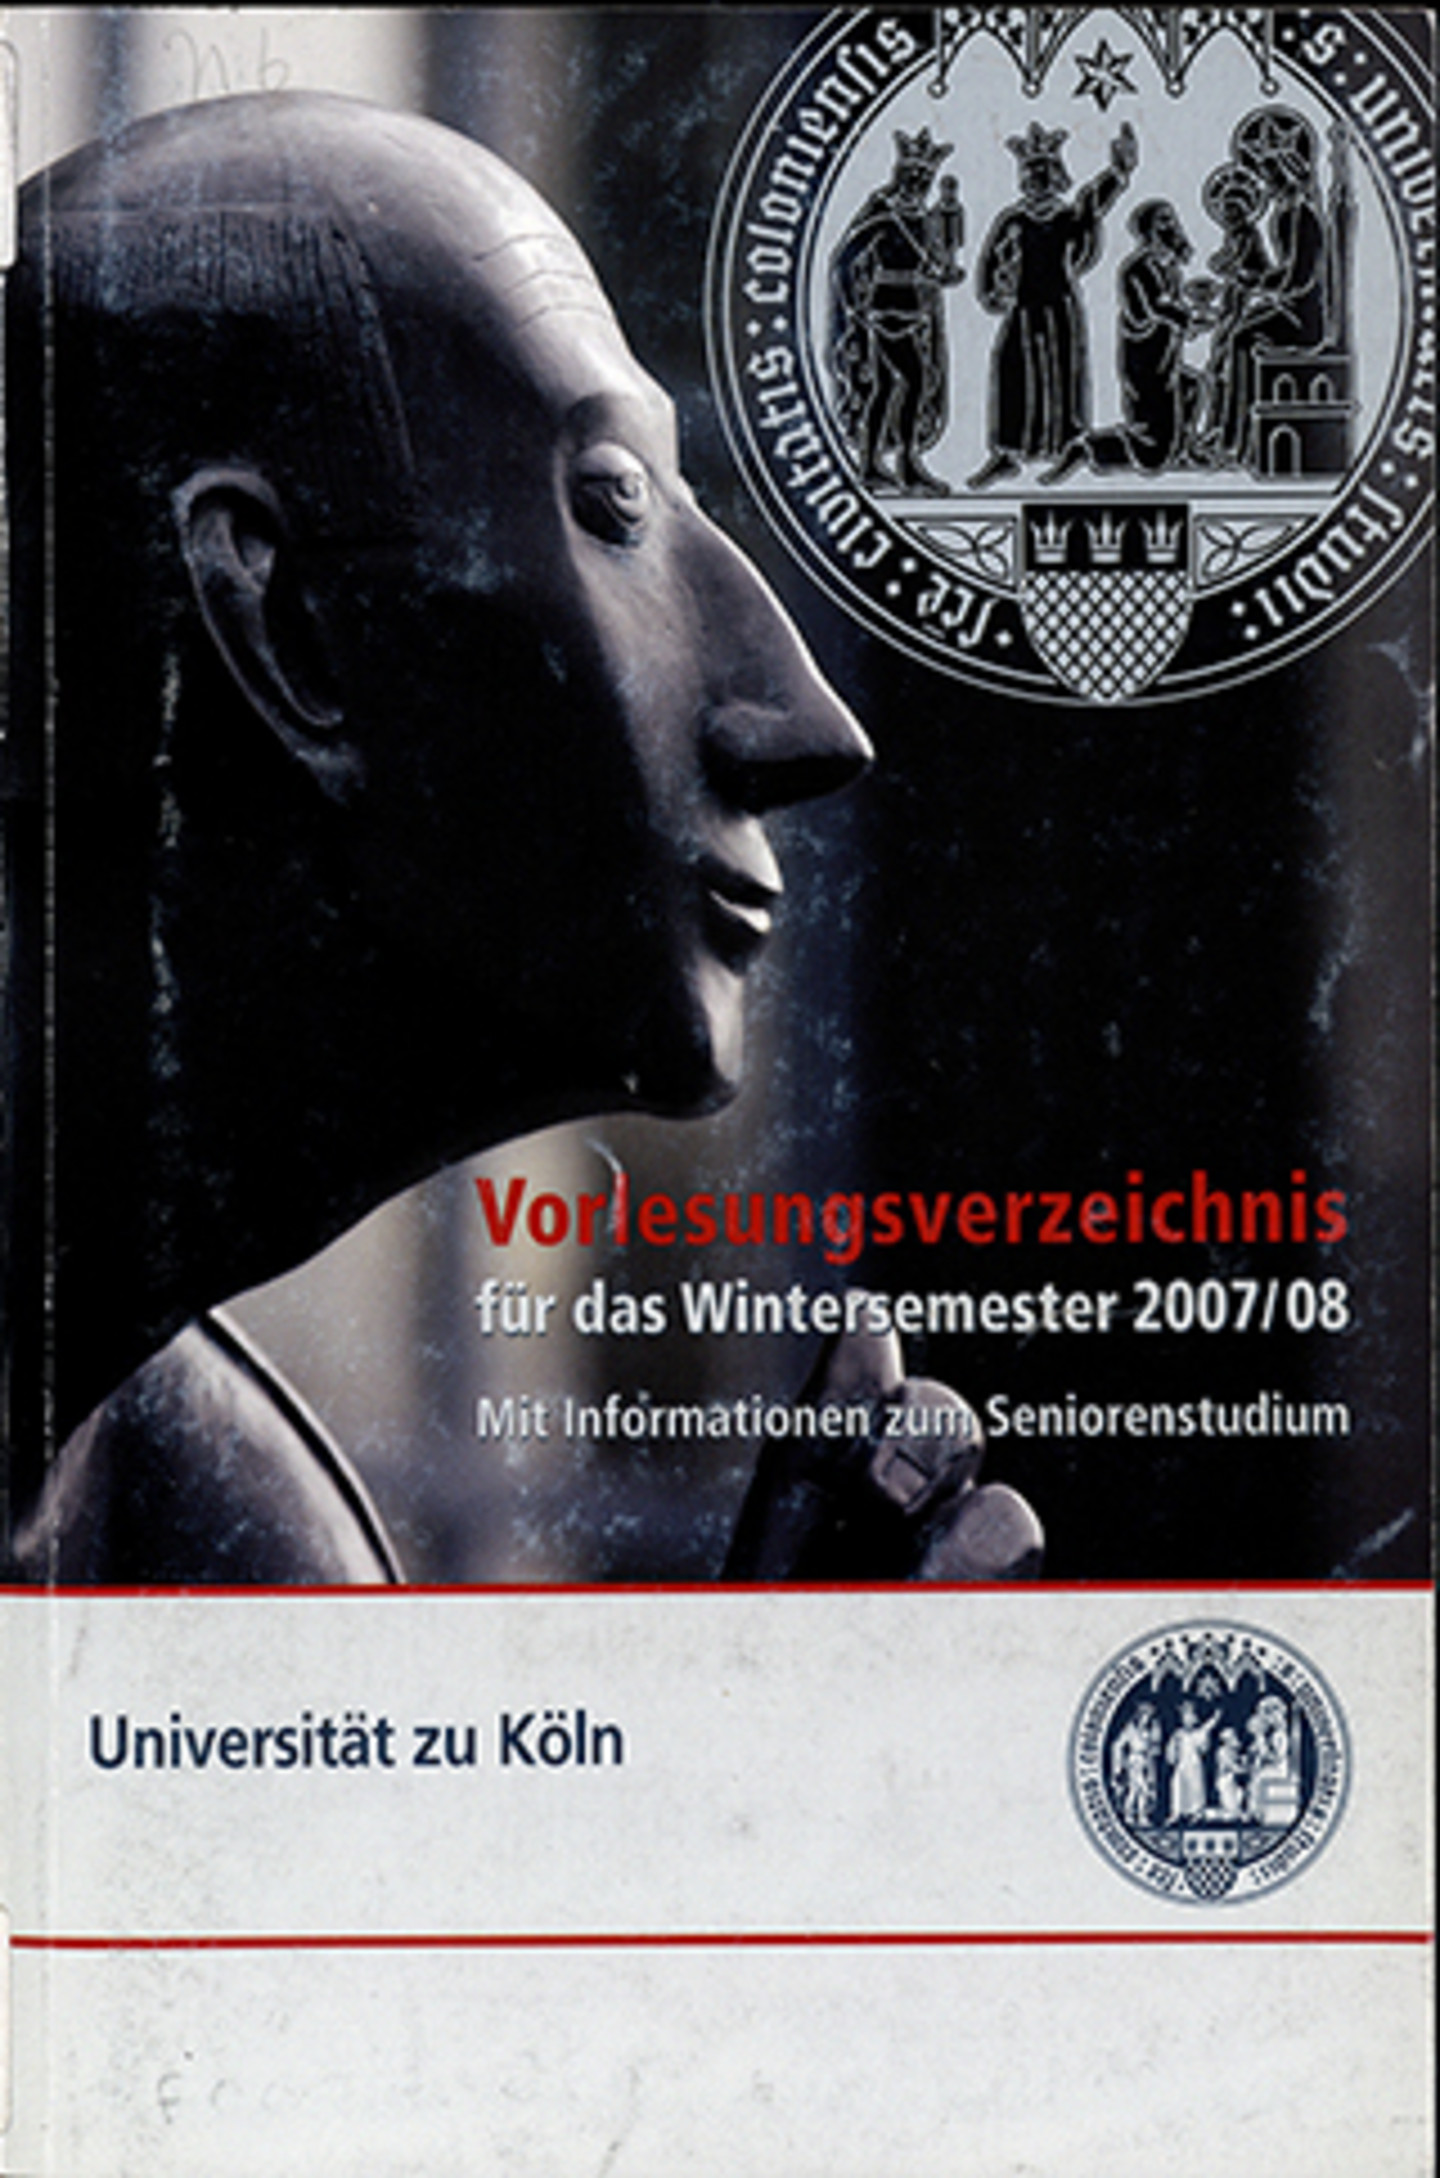 Titelblatt eines Vorlesungsverzeichnisses aus dem Jahr 2007/08.